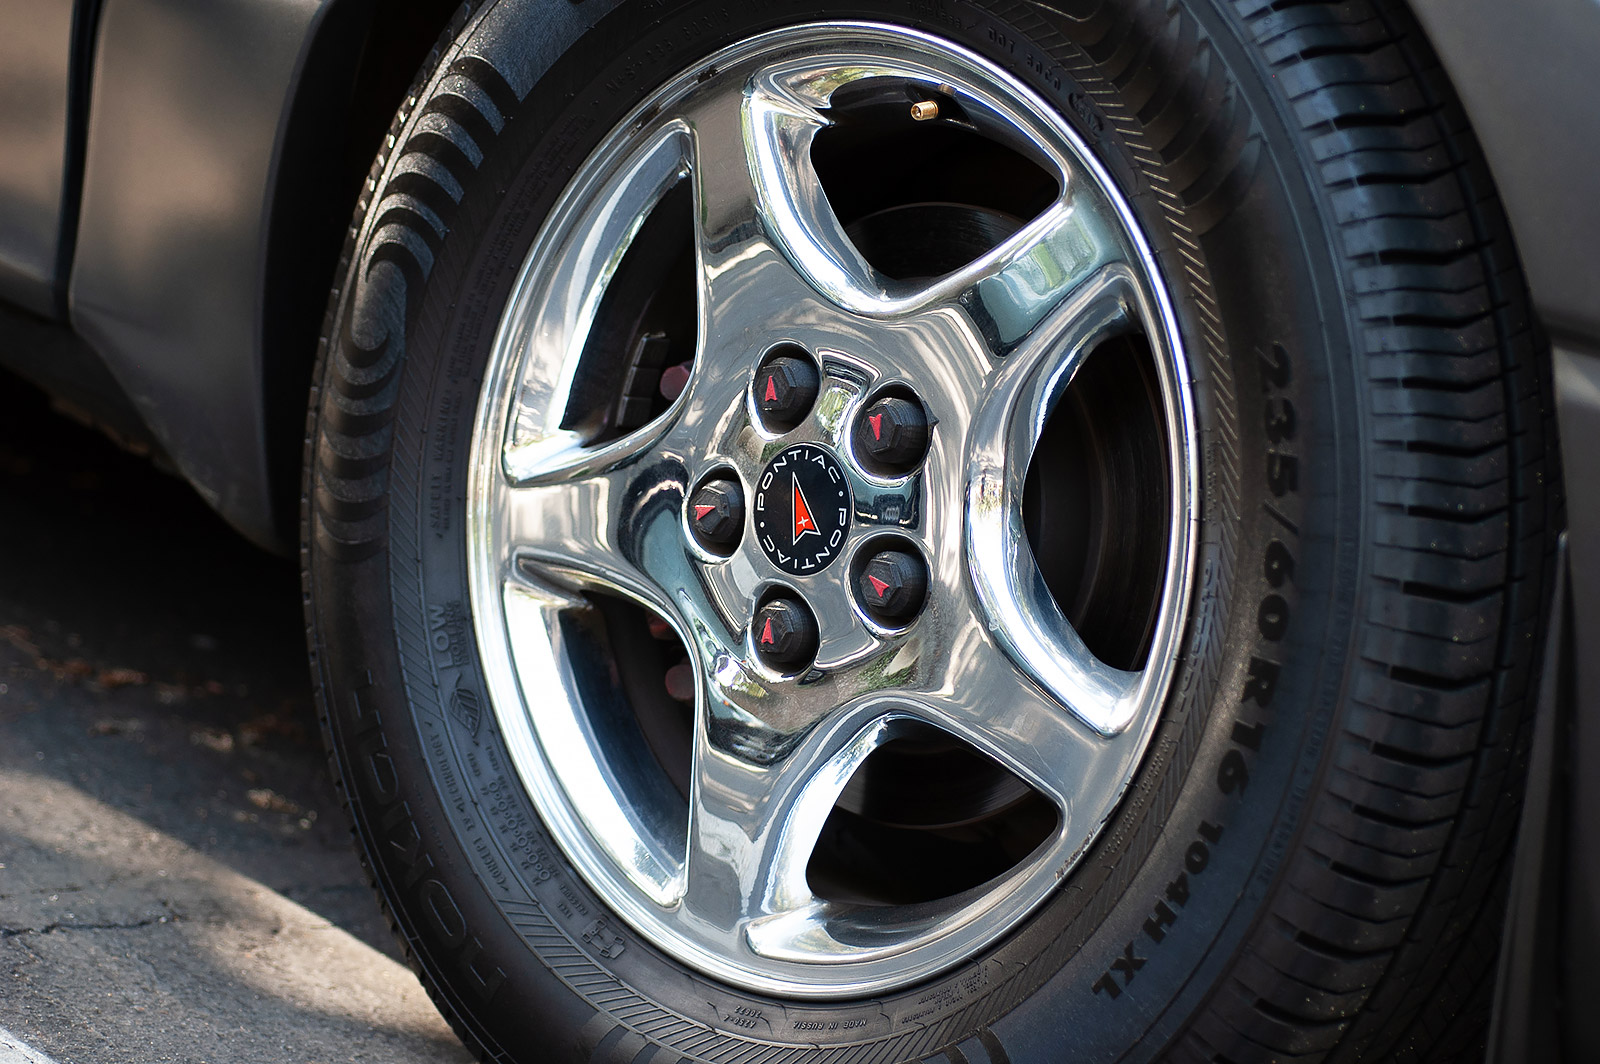 2003 AWD Pontiac Montana Thunder closeup of a custom chrome wheel and 3D printed custom Pontiac lug nut covers.